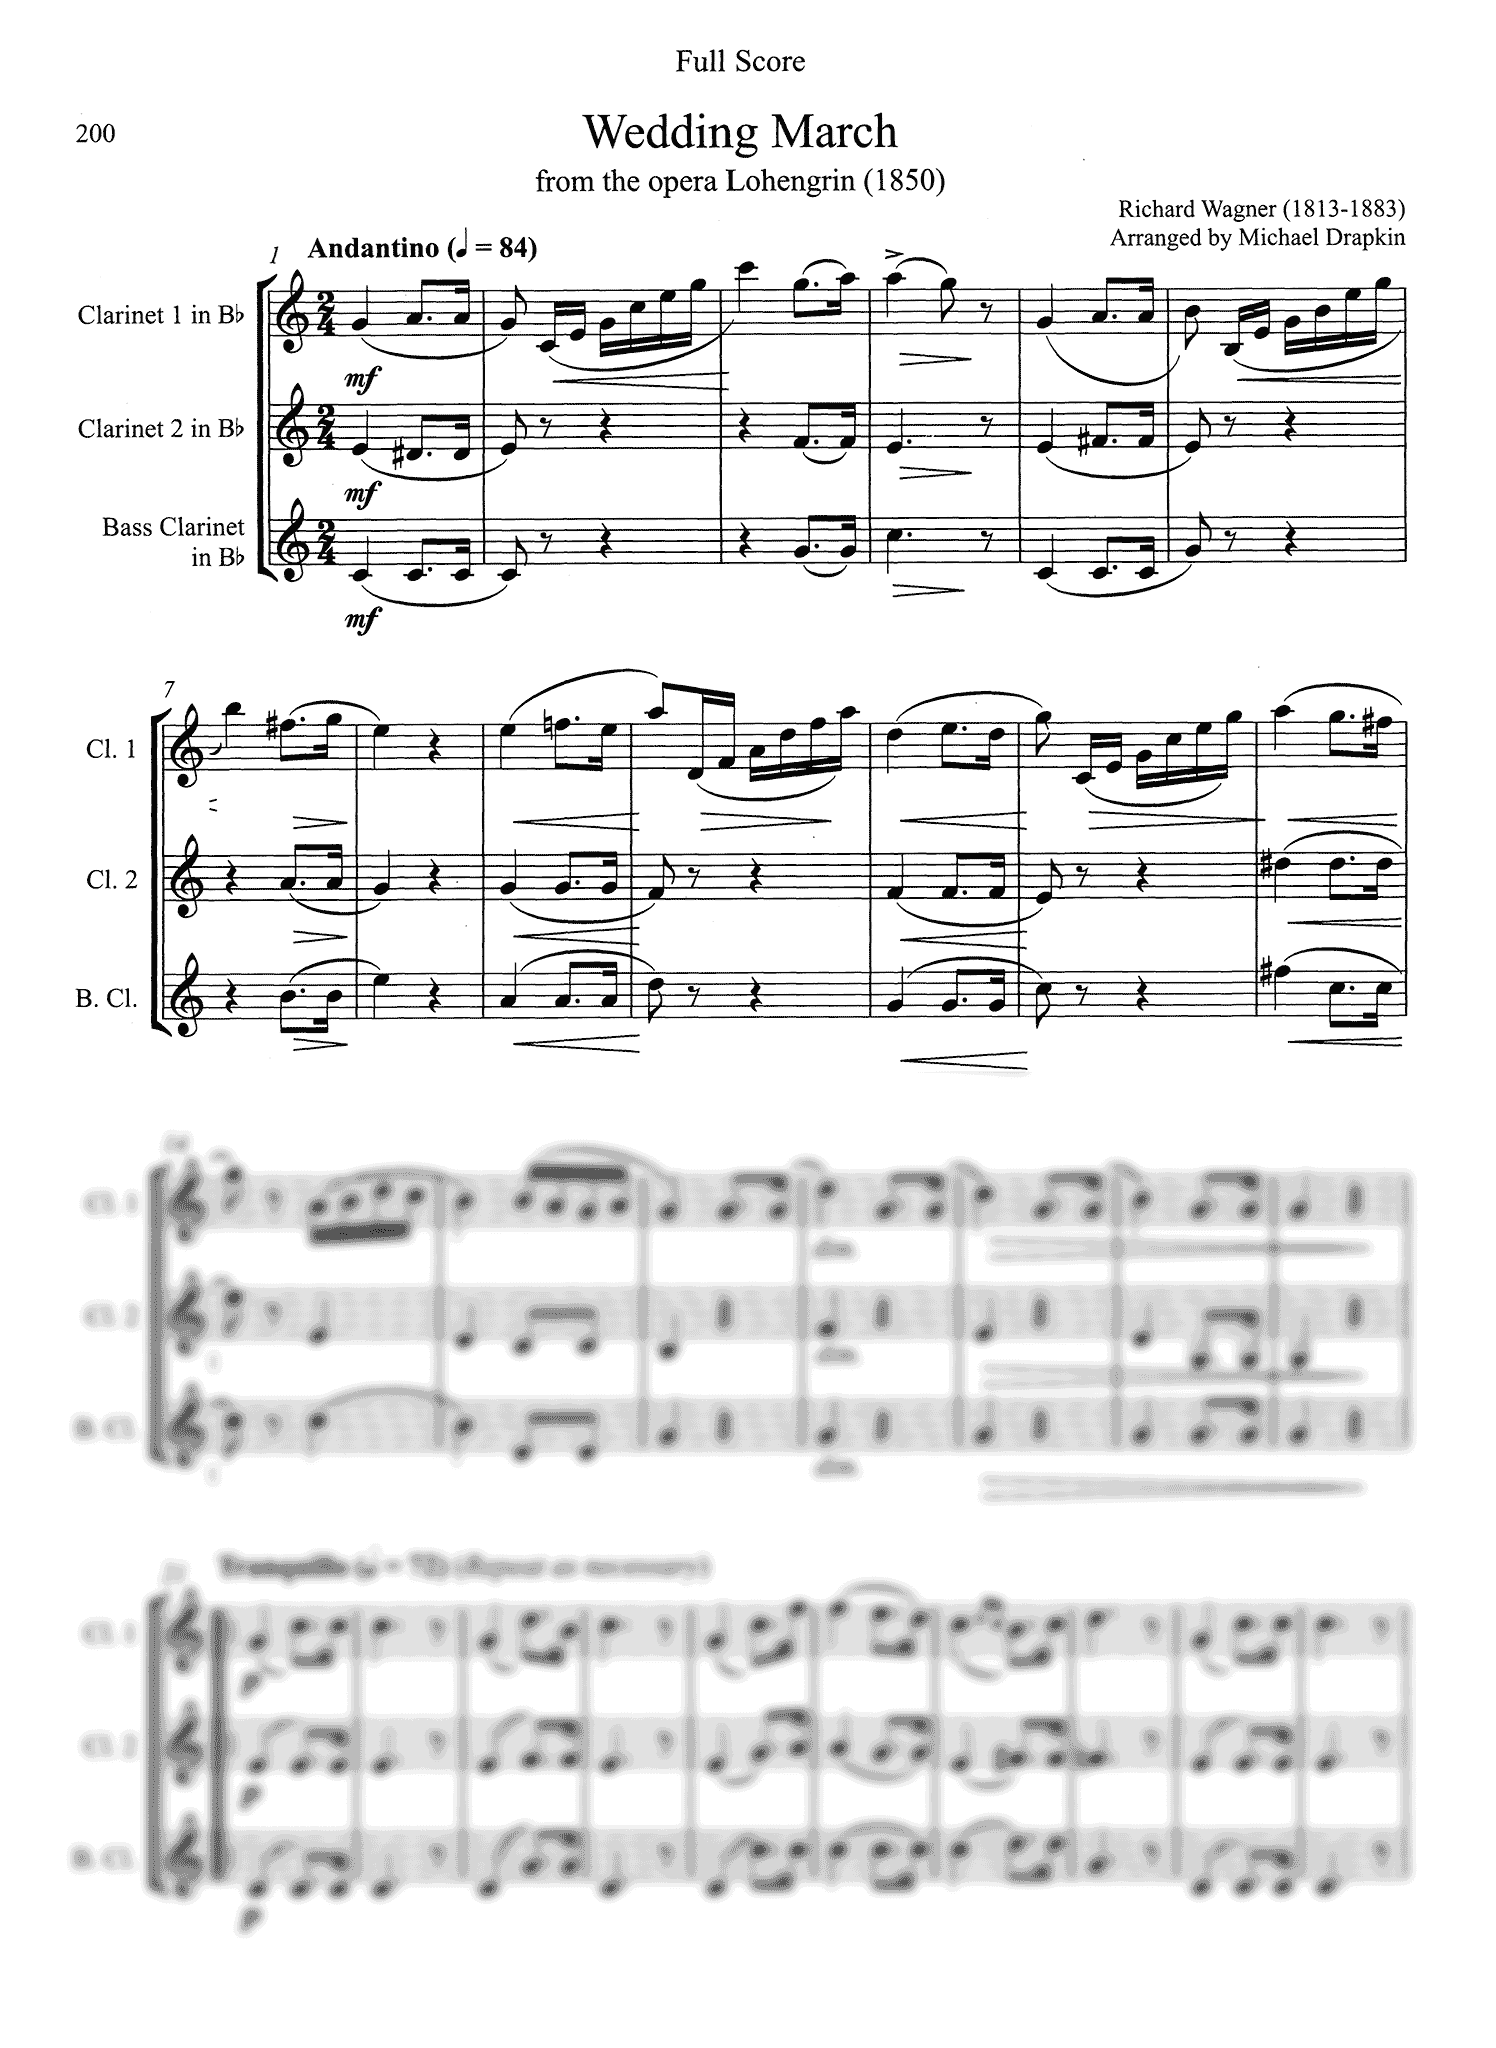 Drapkin Clarinet Trios Volume 1 Wagner Wedding March Score